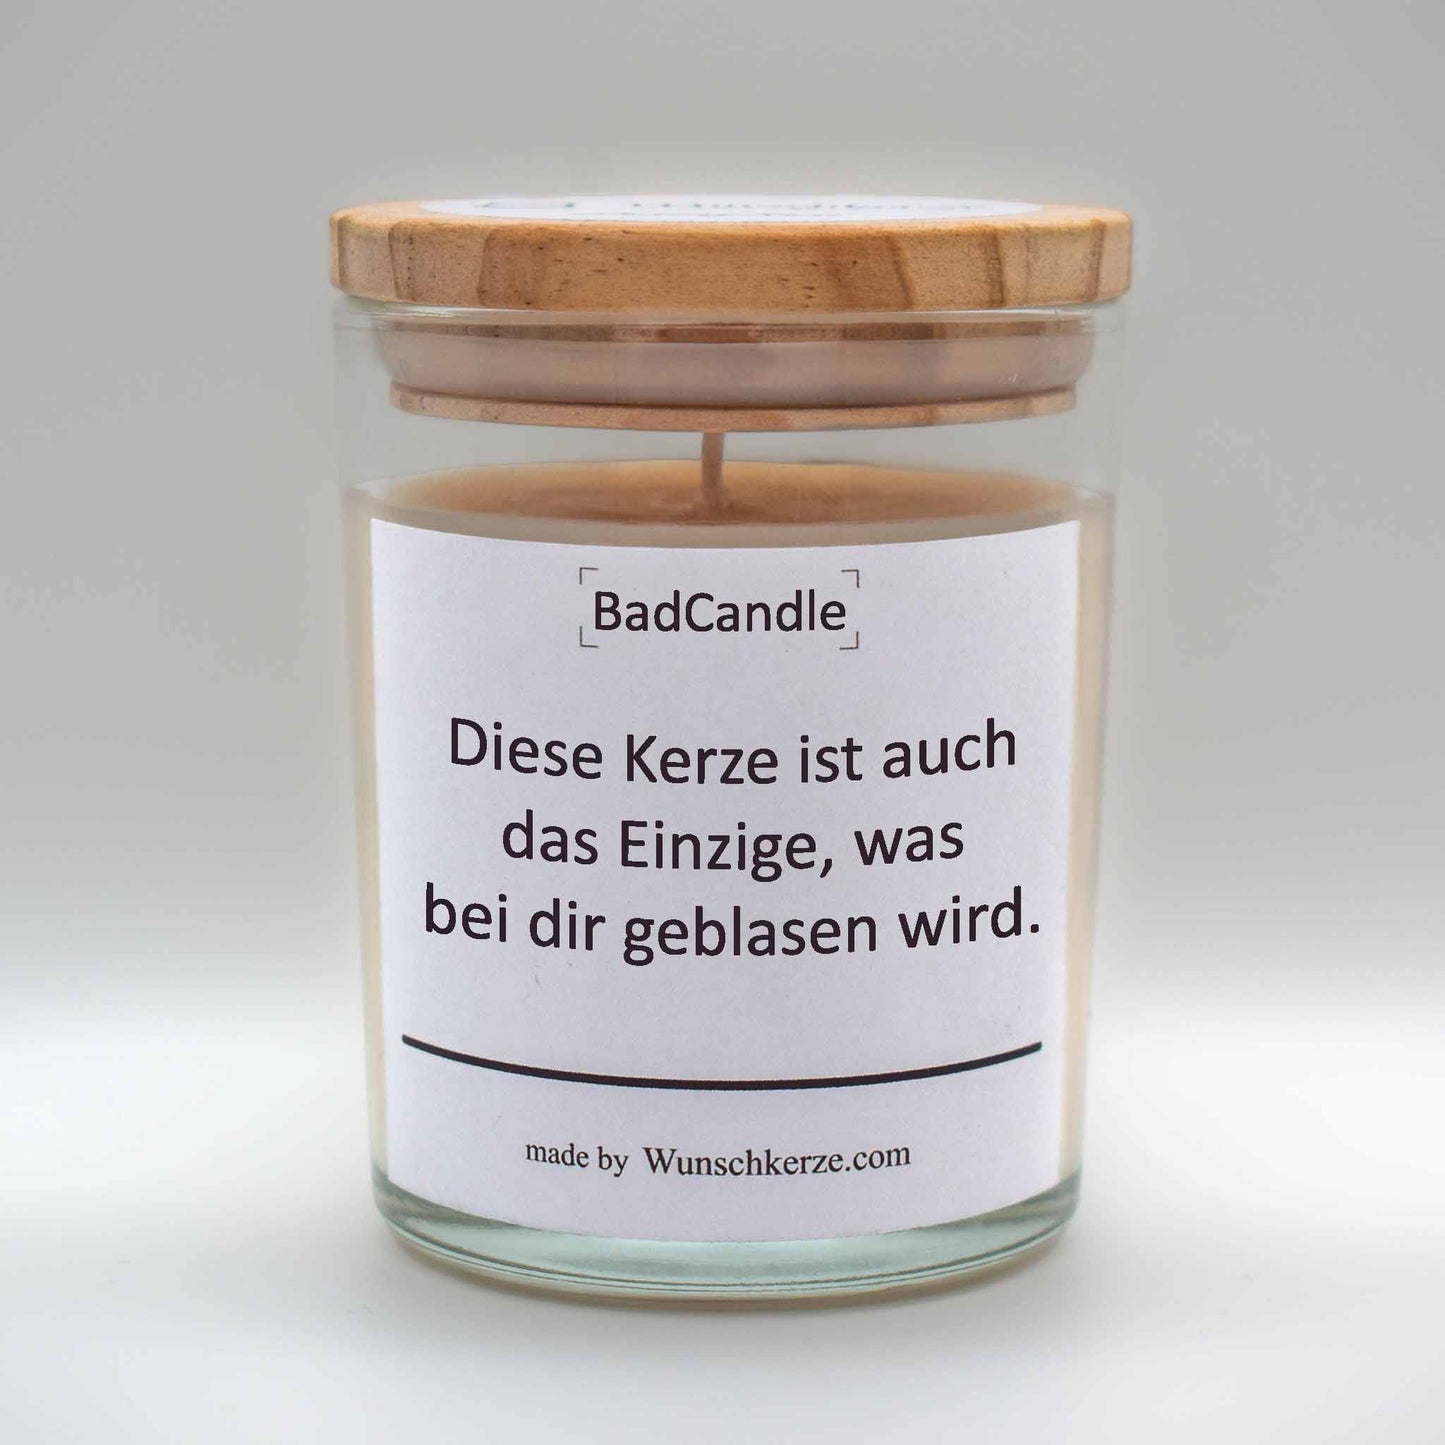 Soja Duftkerze im Glas mit Deckel aus Kiefernholz mit einem Label. Aufschrift: BadCandle - Diese Kerze ist auch das Einzige, was bei dir geblasen wird.